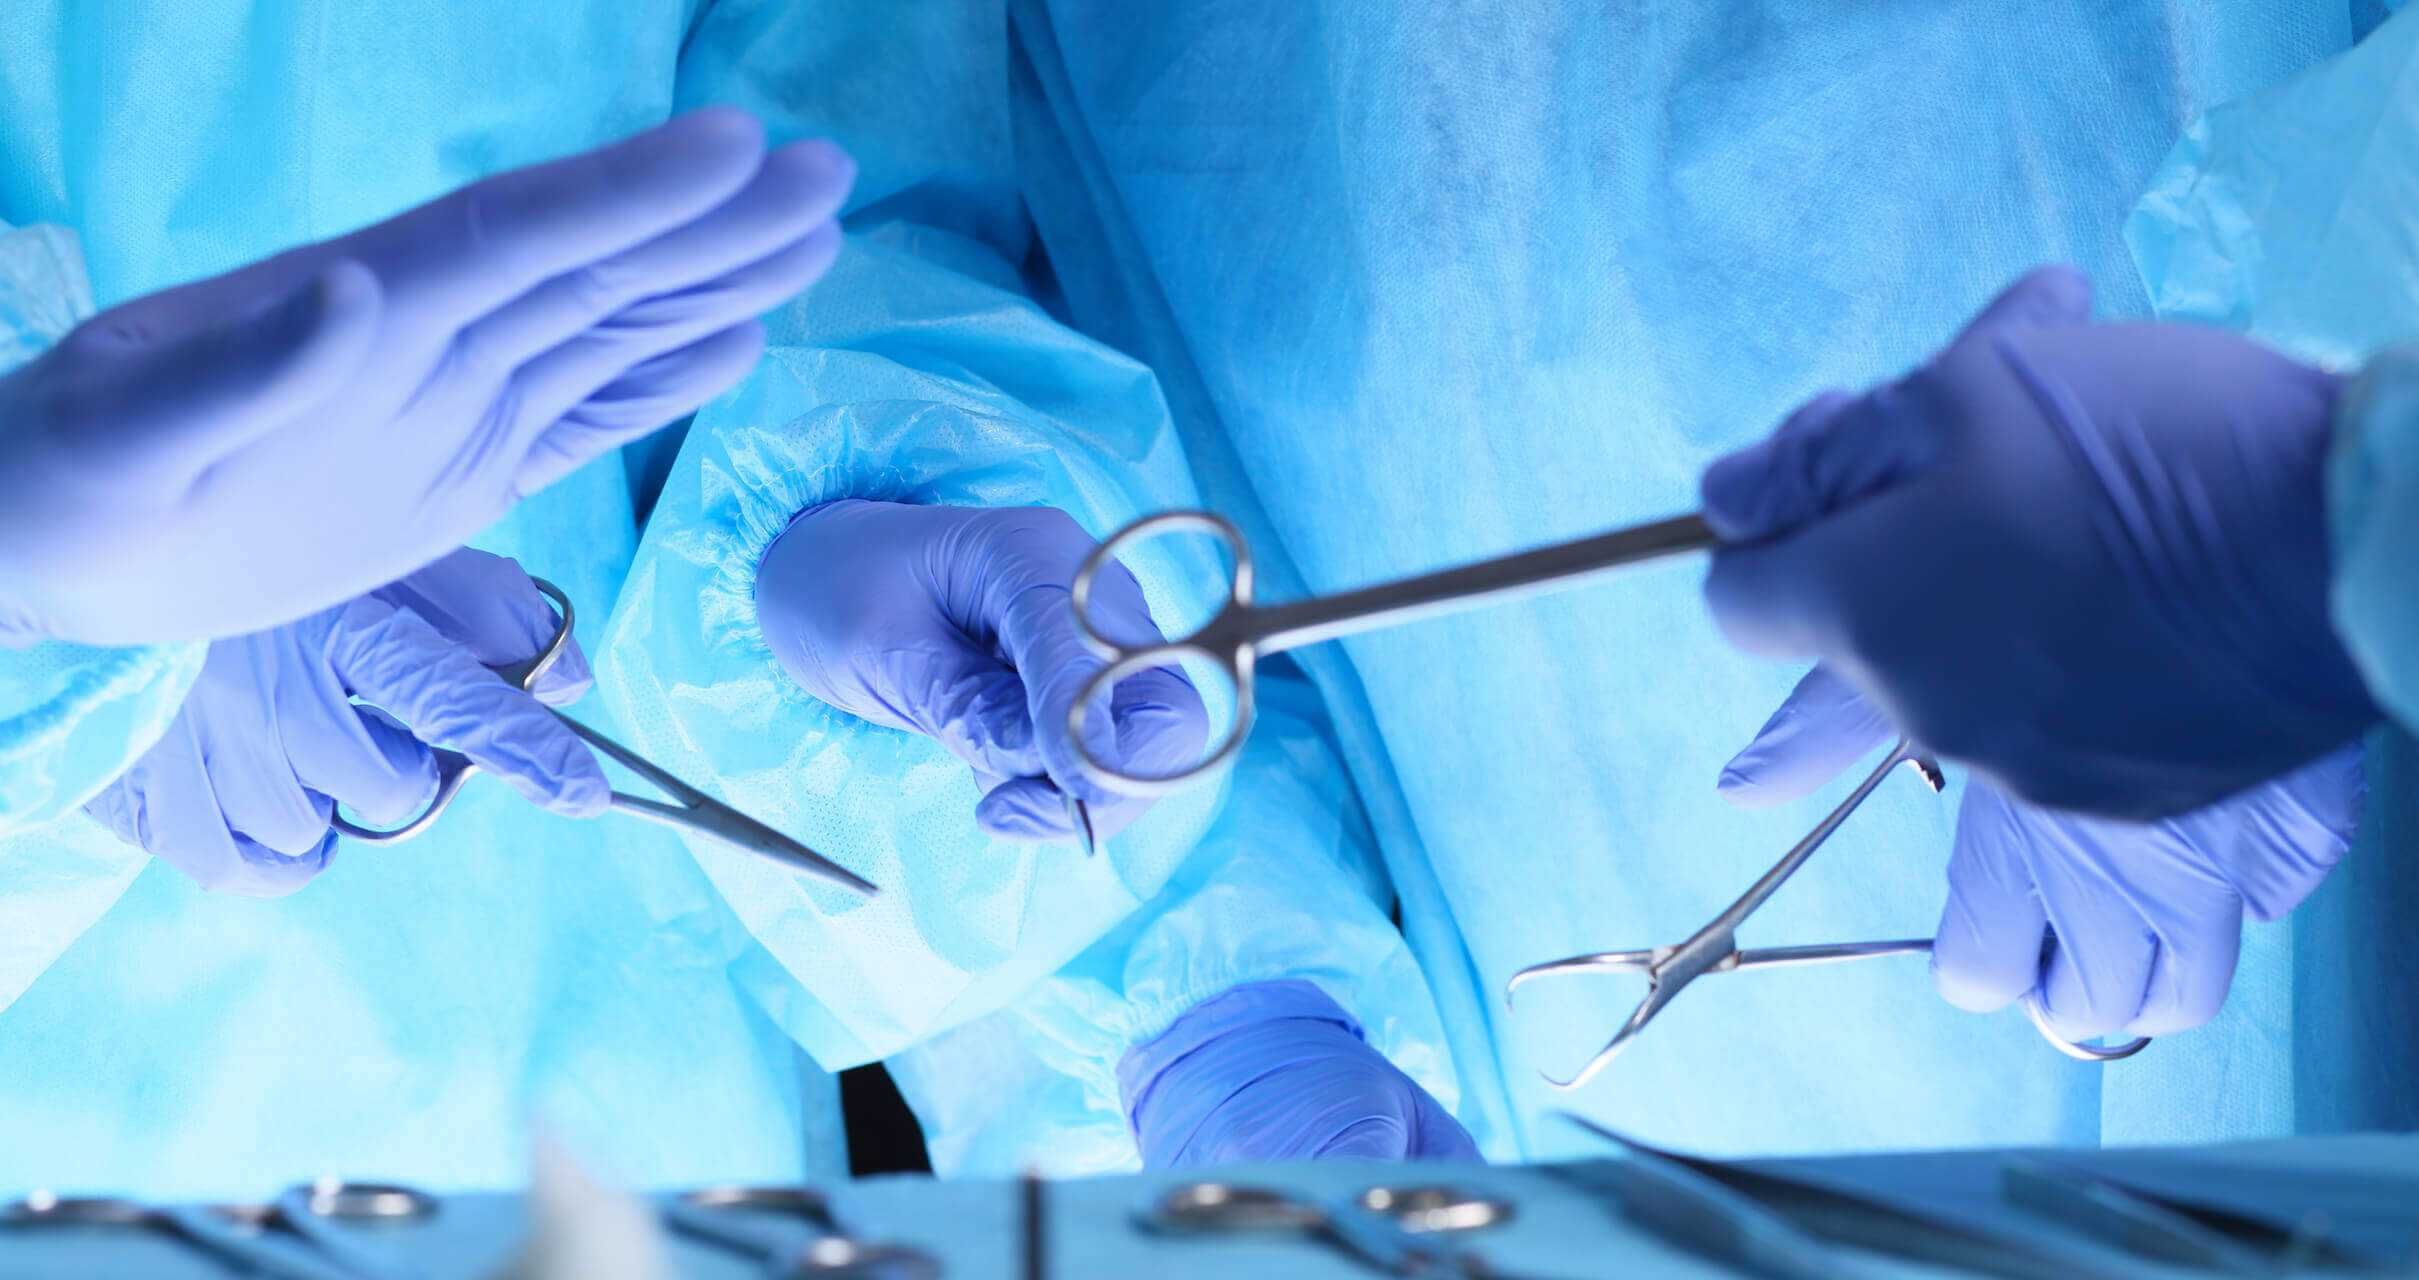 doctors handling surgical equipment